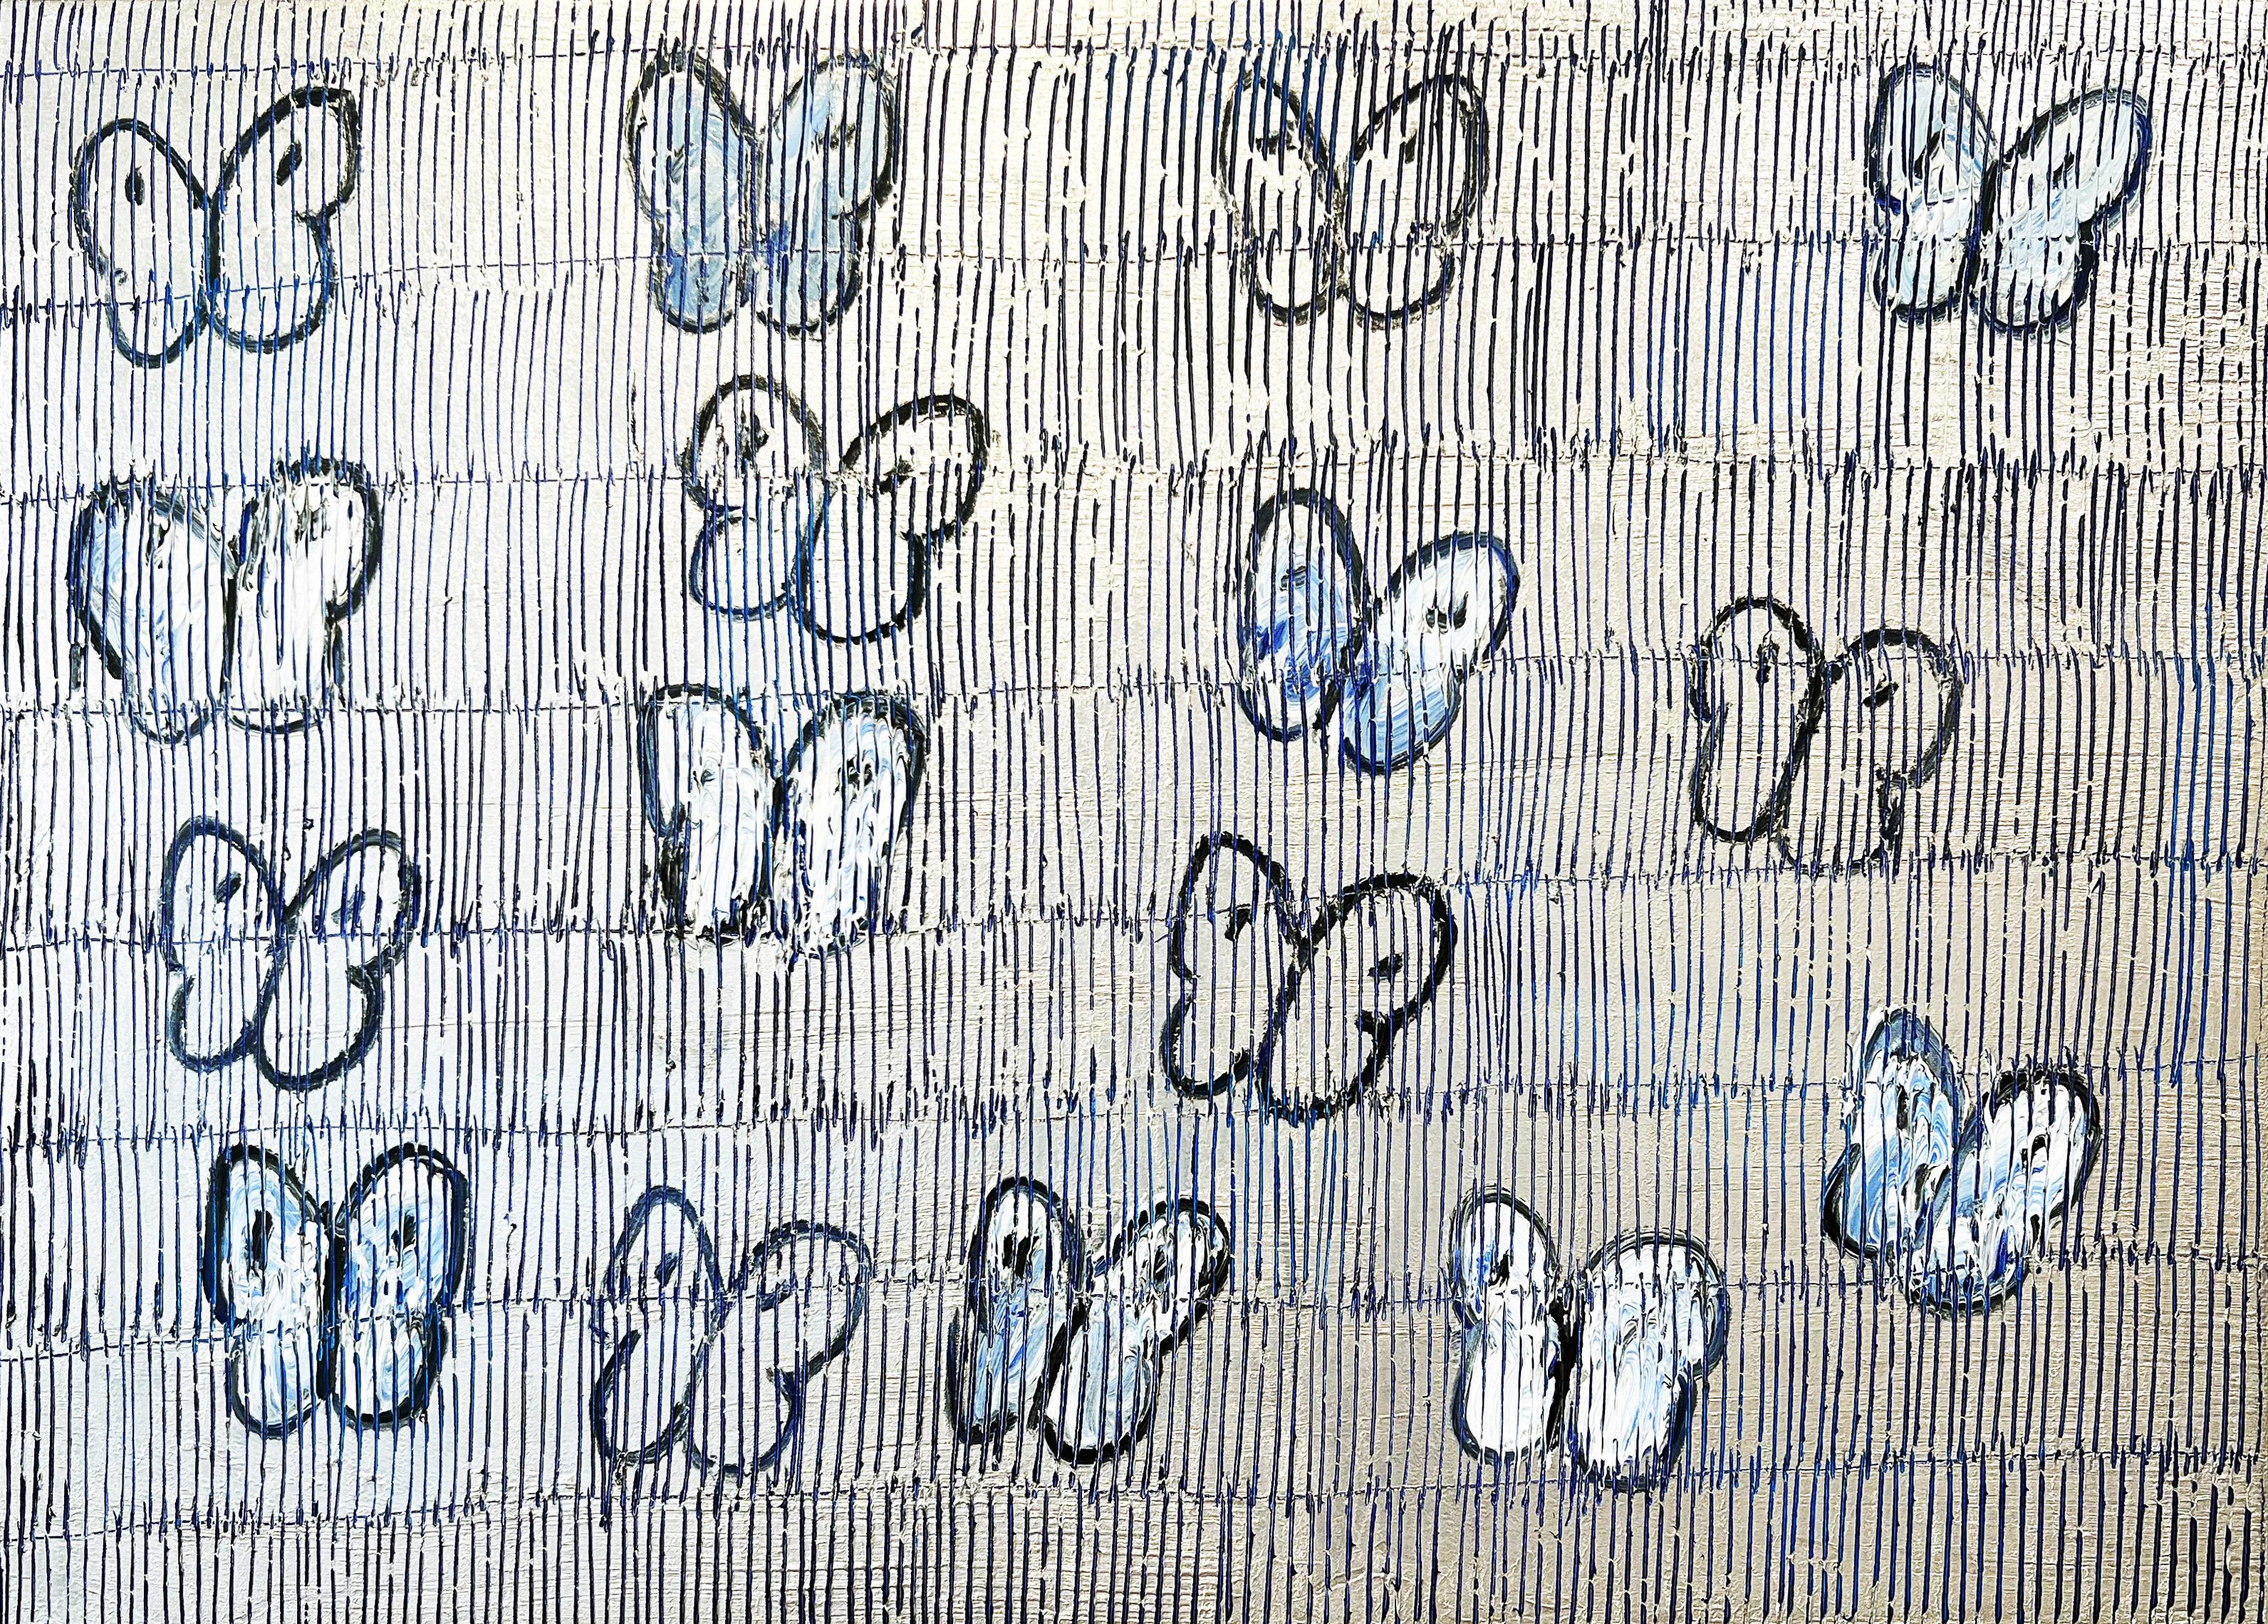 blauer Himmelfahrts-Augustmond" von Hunt Slonem, 2022. Öl auf Leinwand, 30 x 40 cm. Dieses Gemälde zeigt Slonems charakteristische Schmetterlinge in schwarzer Farbe auf einem blauen, schraffierten Hintergrund.

Slonem, der als einer der großen